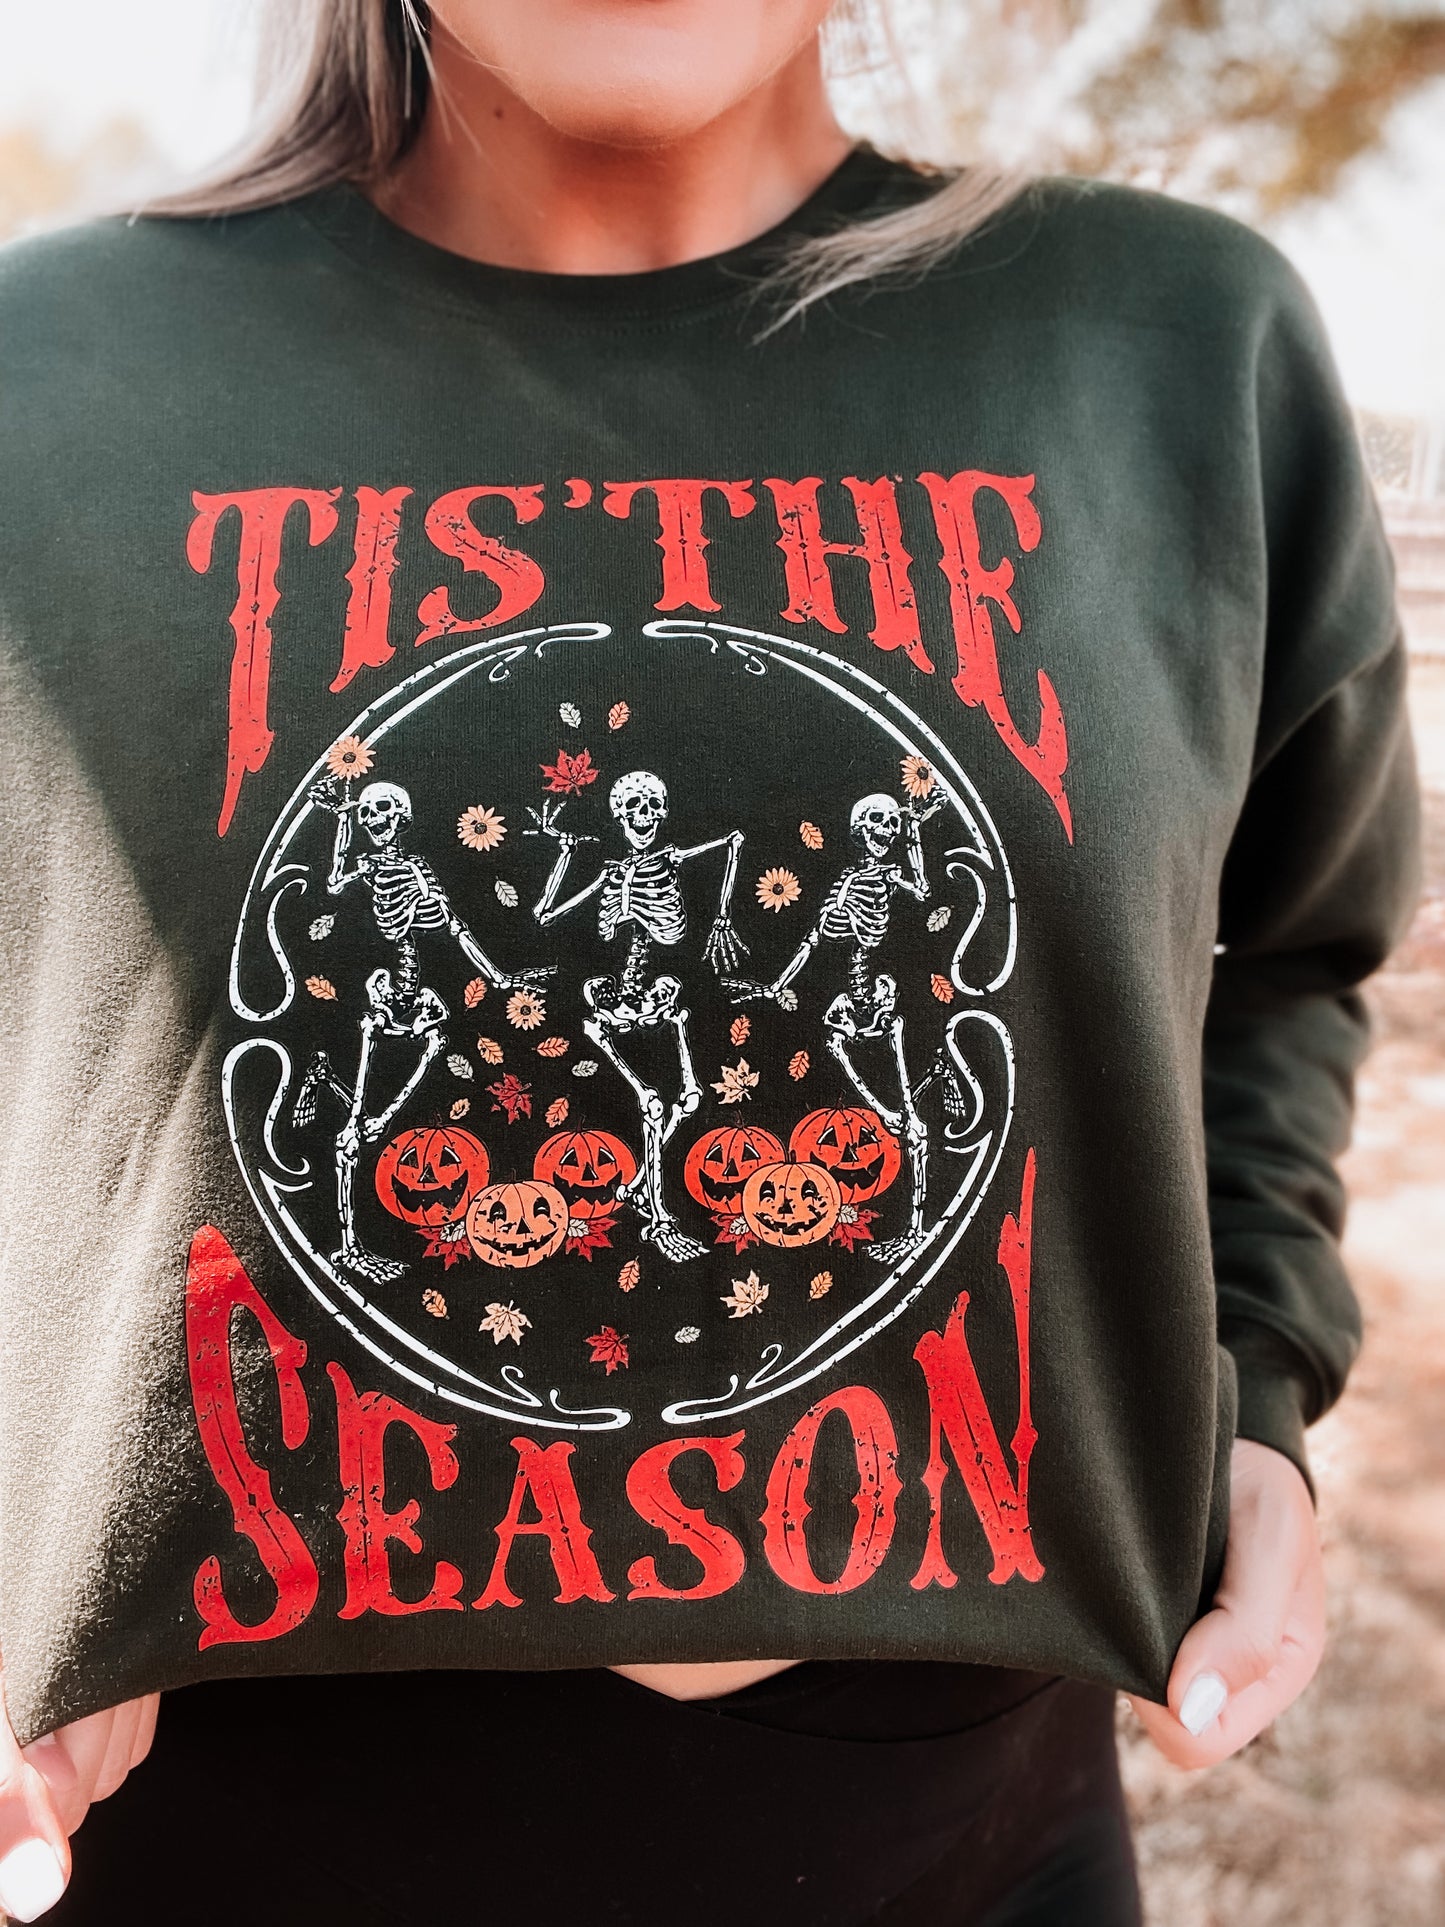 Tis the season Sweatshirt